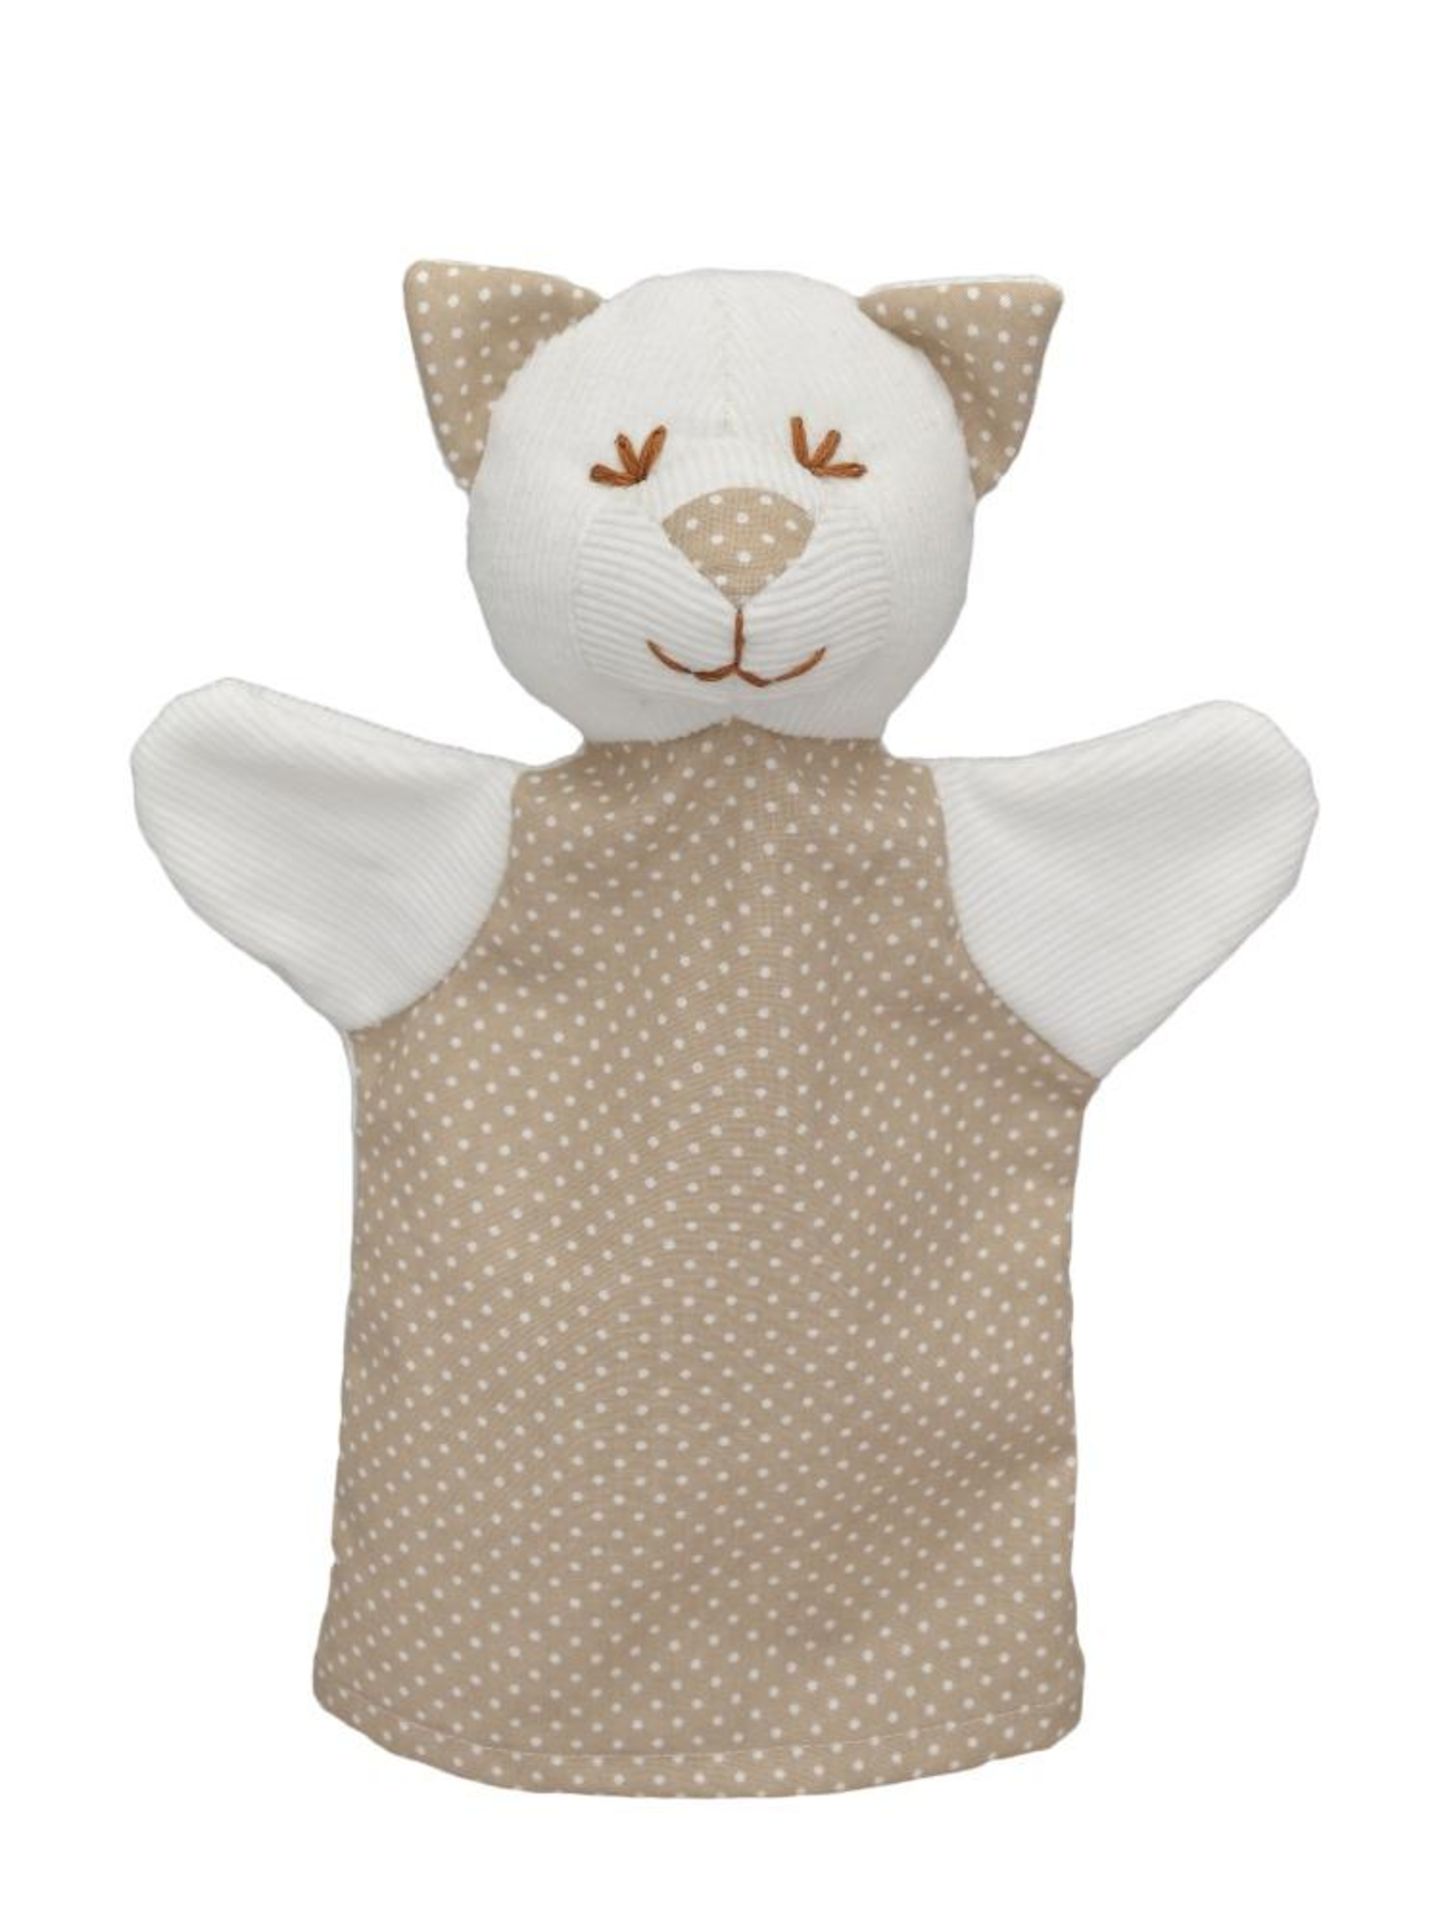 4 x Hand puppet - MIMI cat, polka dot |8590121204040